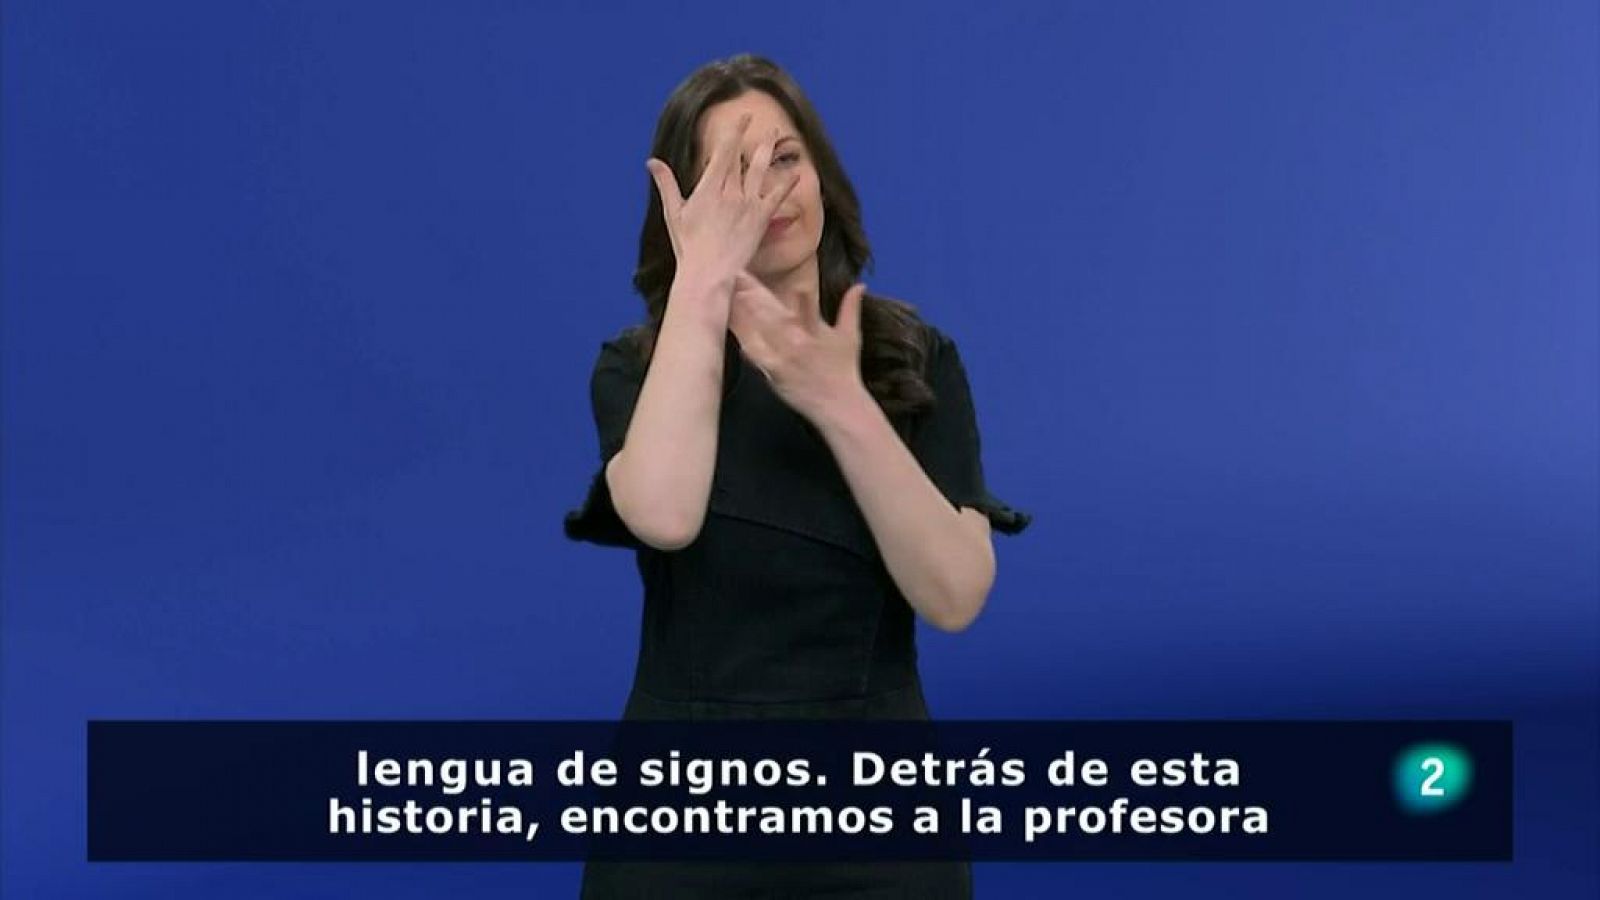 Cultura: la lengua de signos llevada a un cuento